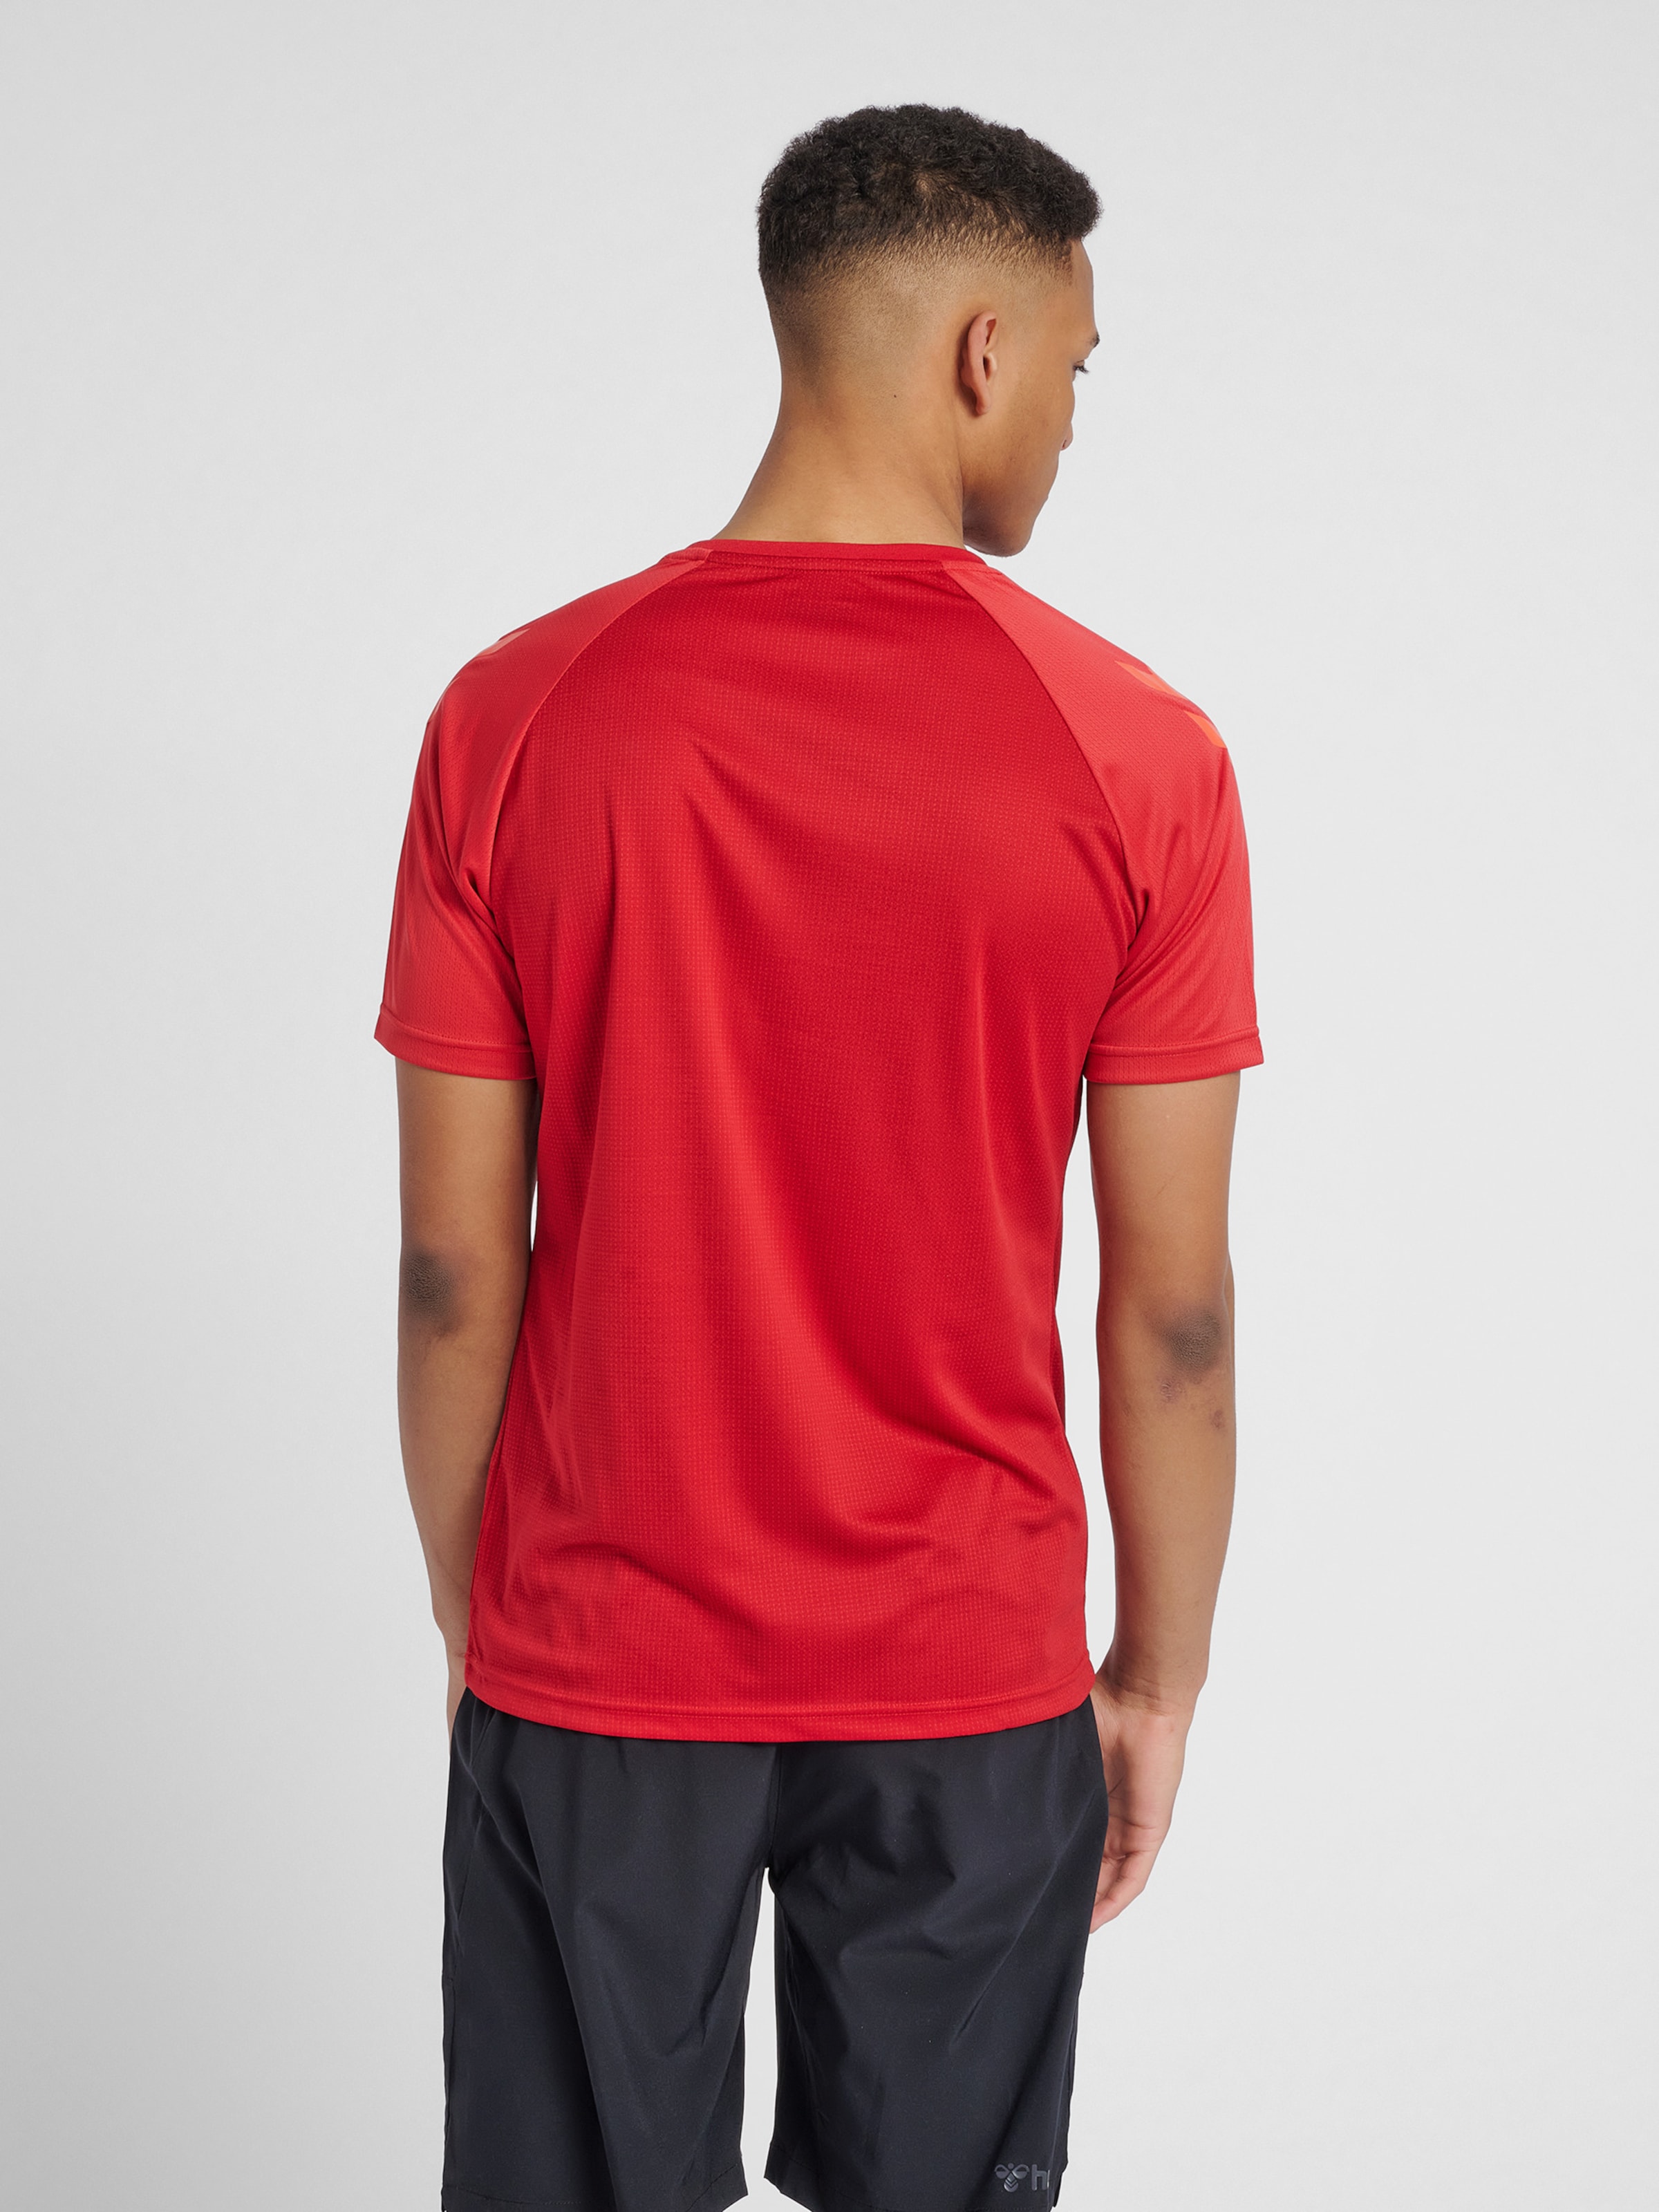 Männer Sportarten Hummel Shirt in Melone, Hellrot - RF50212